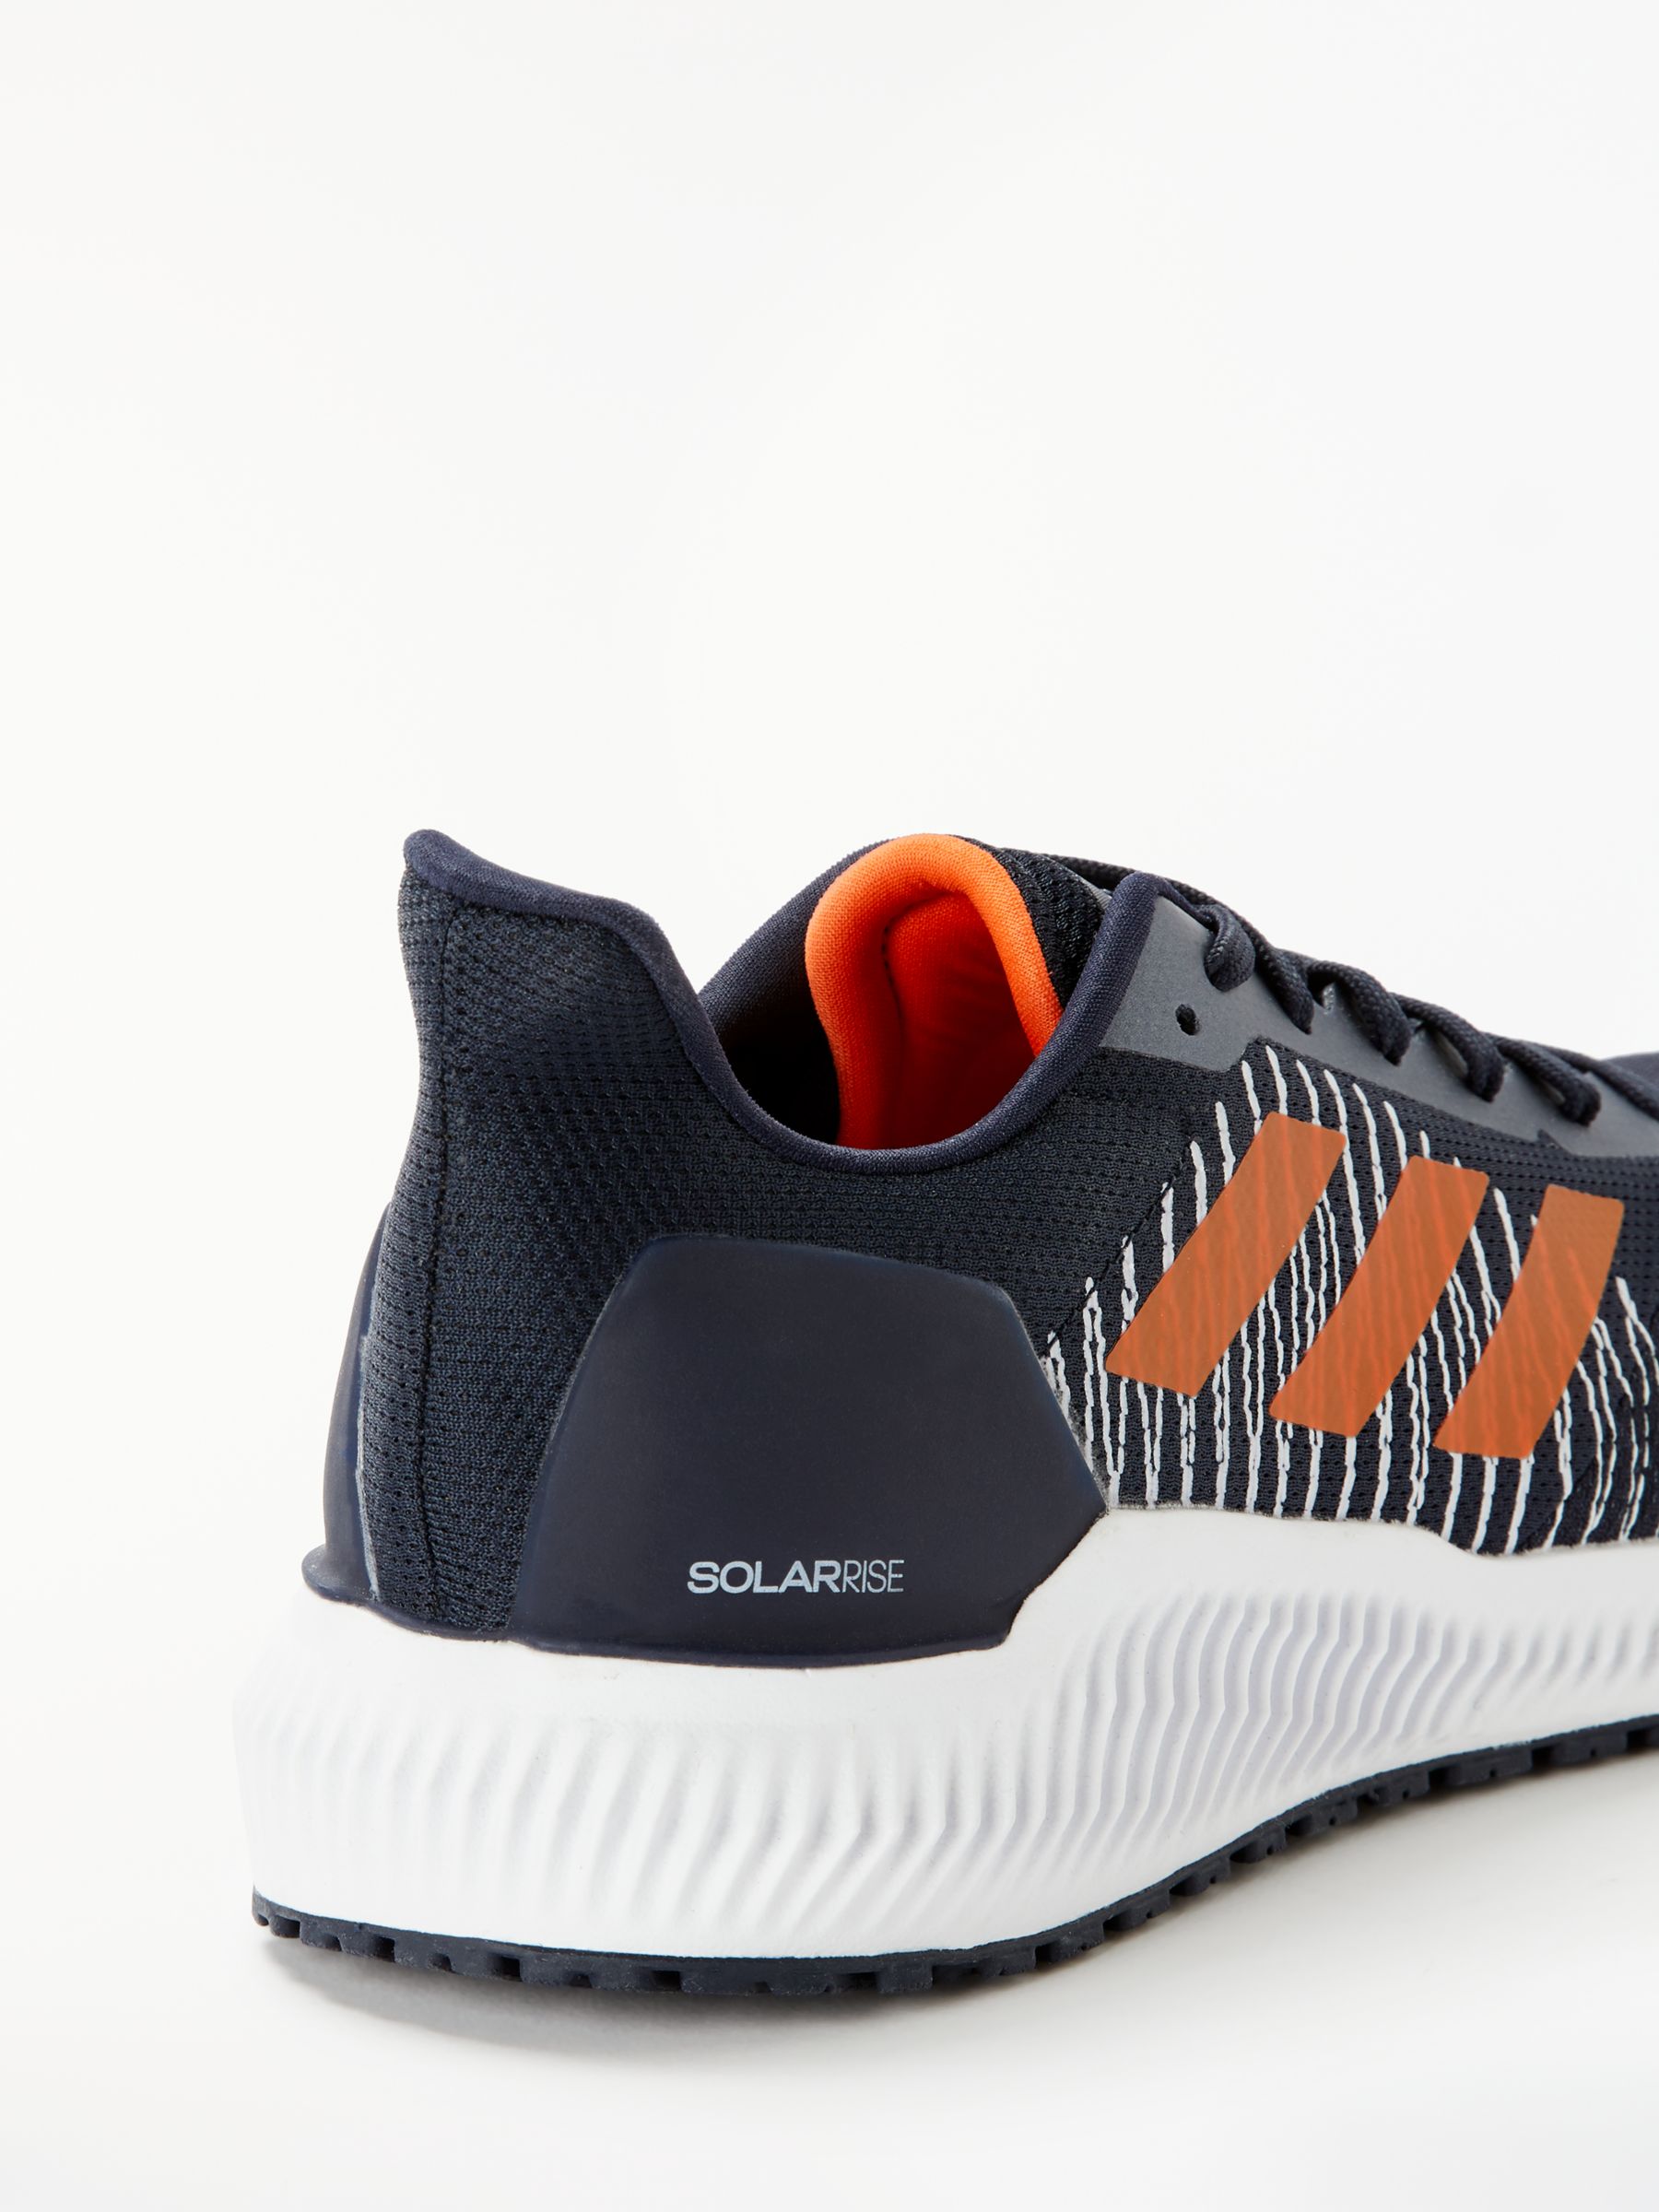 adidas solar ride mens running shoes